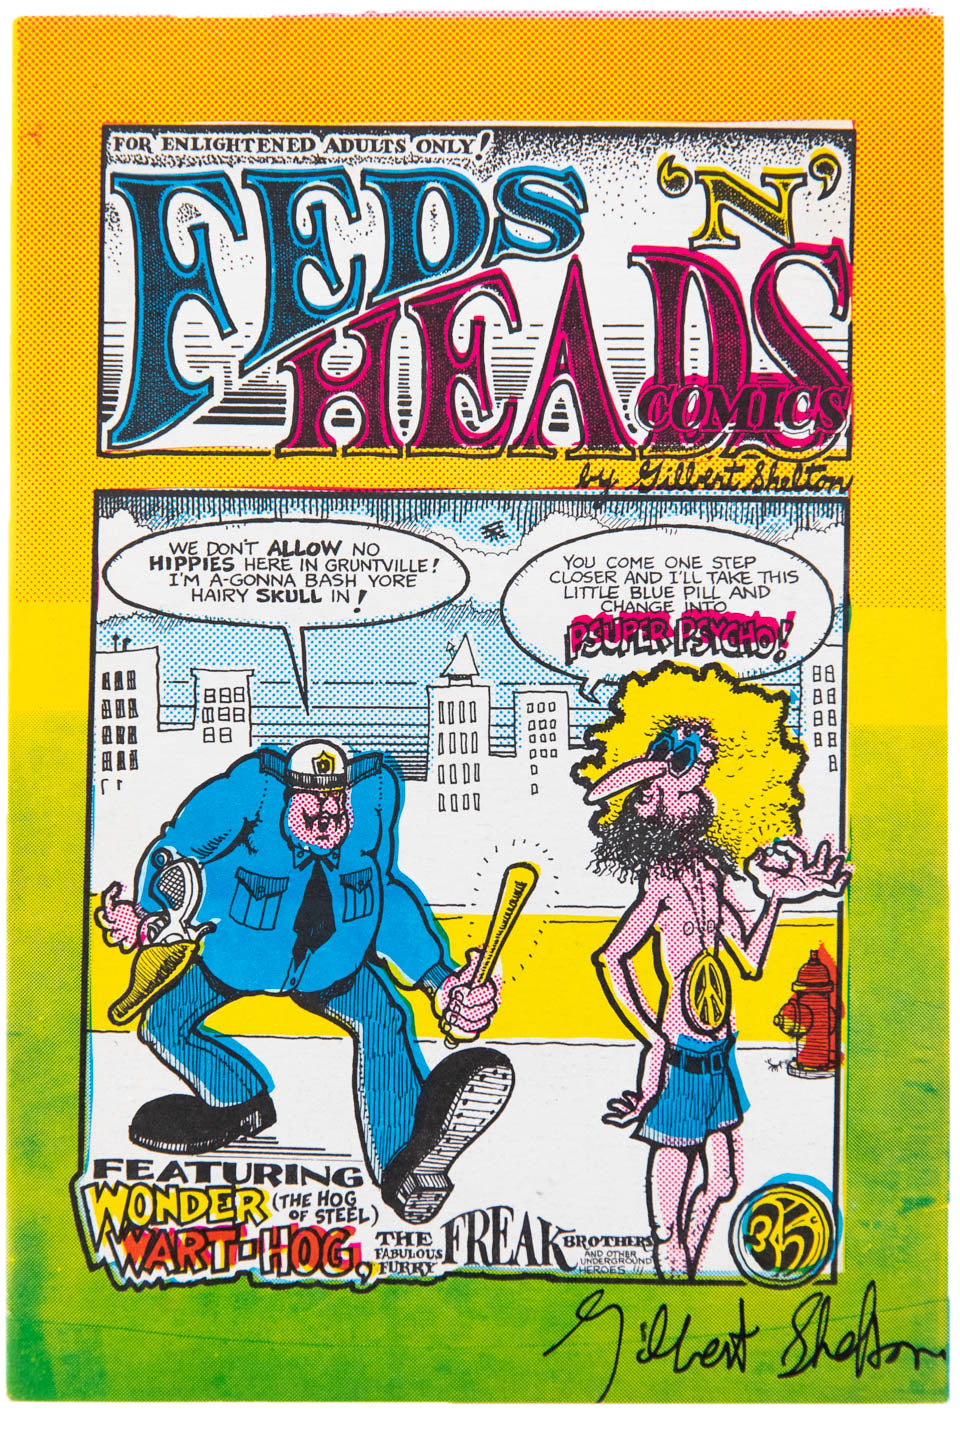 FEDS 'N HEADS COMICS